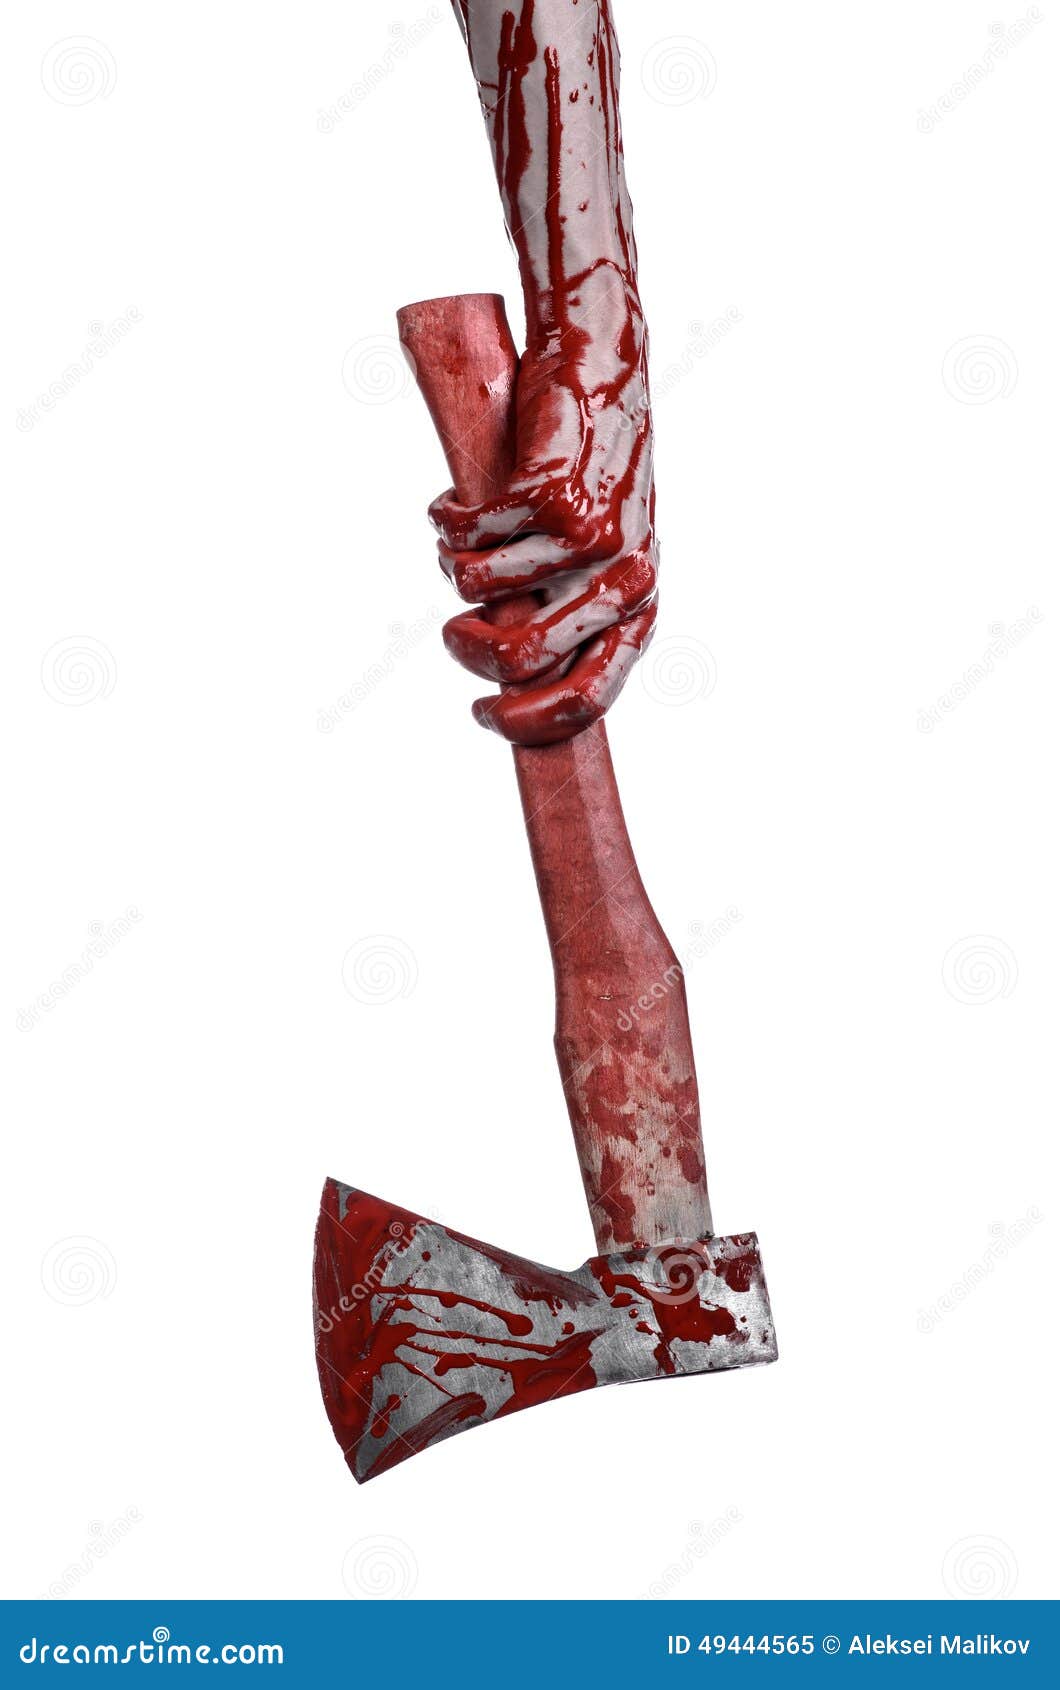 Αιματηρό θέμα αποκριών: αιματηρό χέρι που κρατά το τσεκούρι ενός αιματηρού χασάπη απομονωμένο στο άσπρο υπόβαθρο στο στούντιο